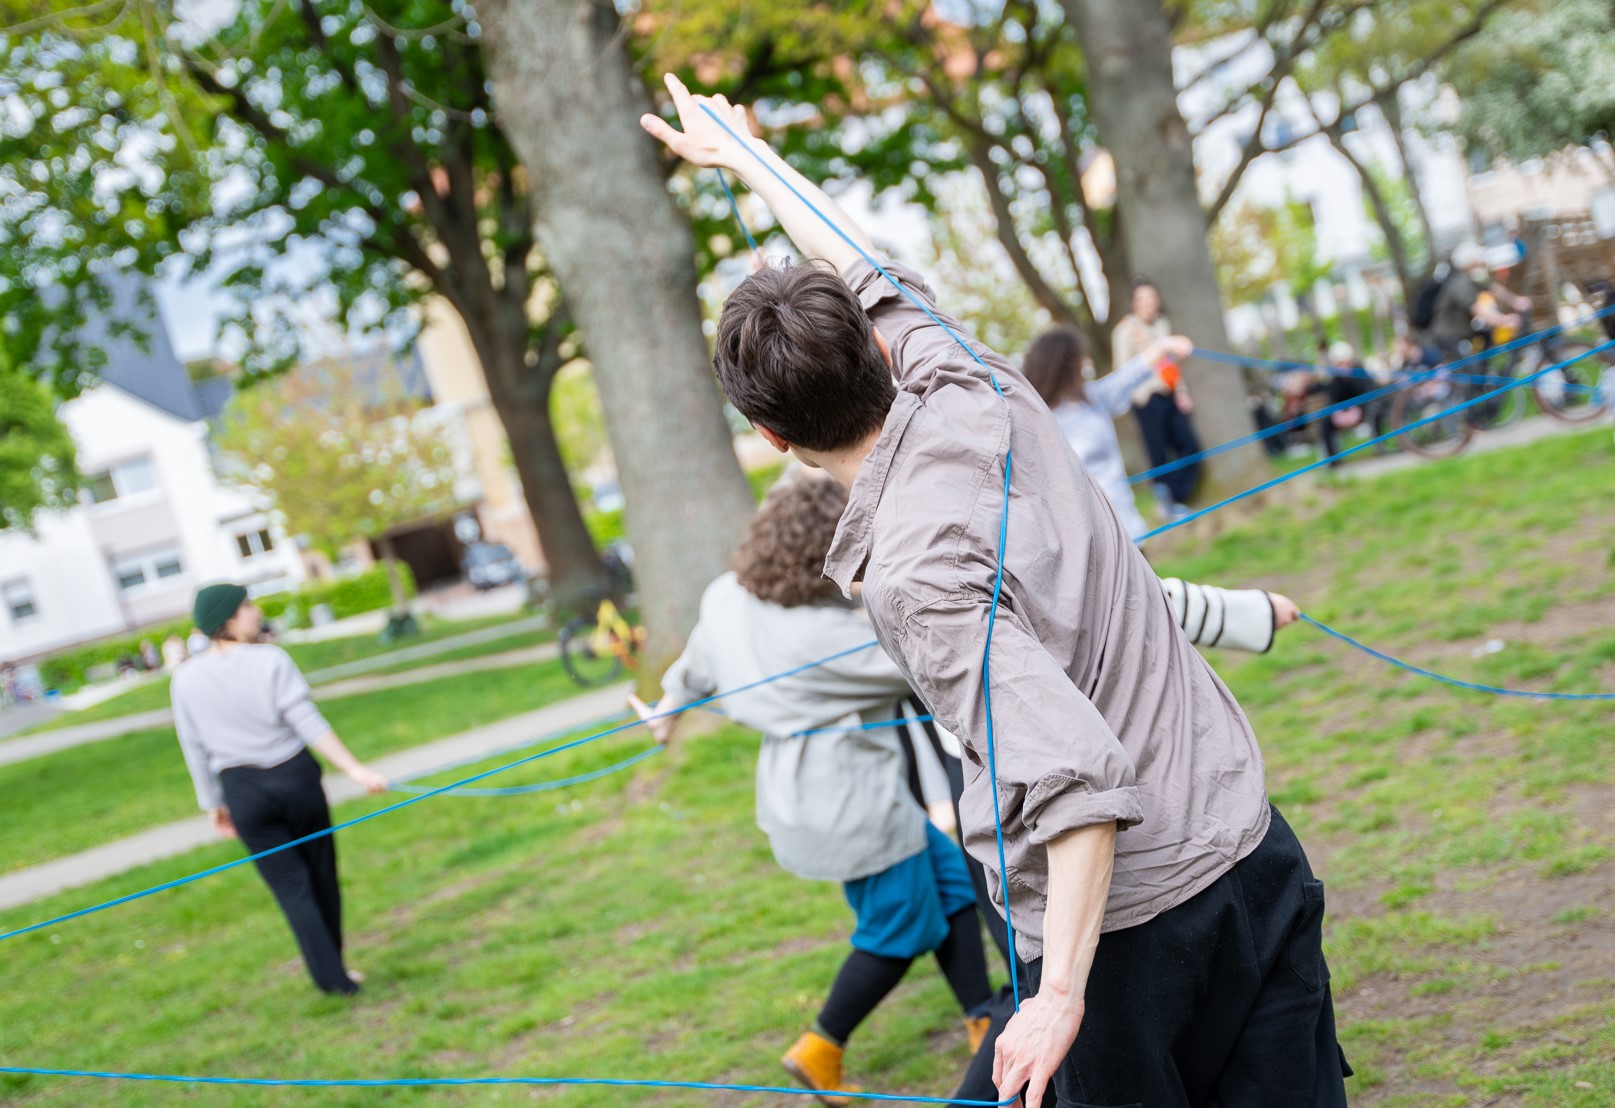 Menschen tanzen in einem Park miteinander. Sie halten einen blauen Faden in der Hand, durch den sie sich miteinander verbinden. Die Menschen sind nur von hinten zu sehen.